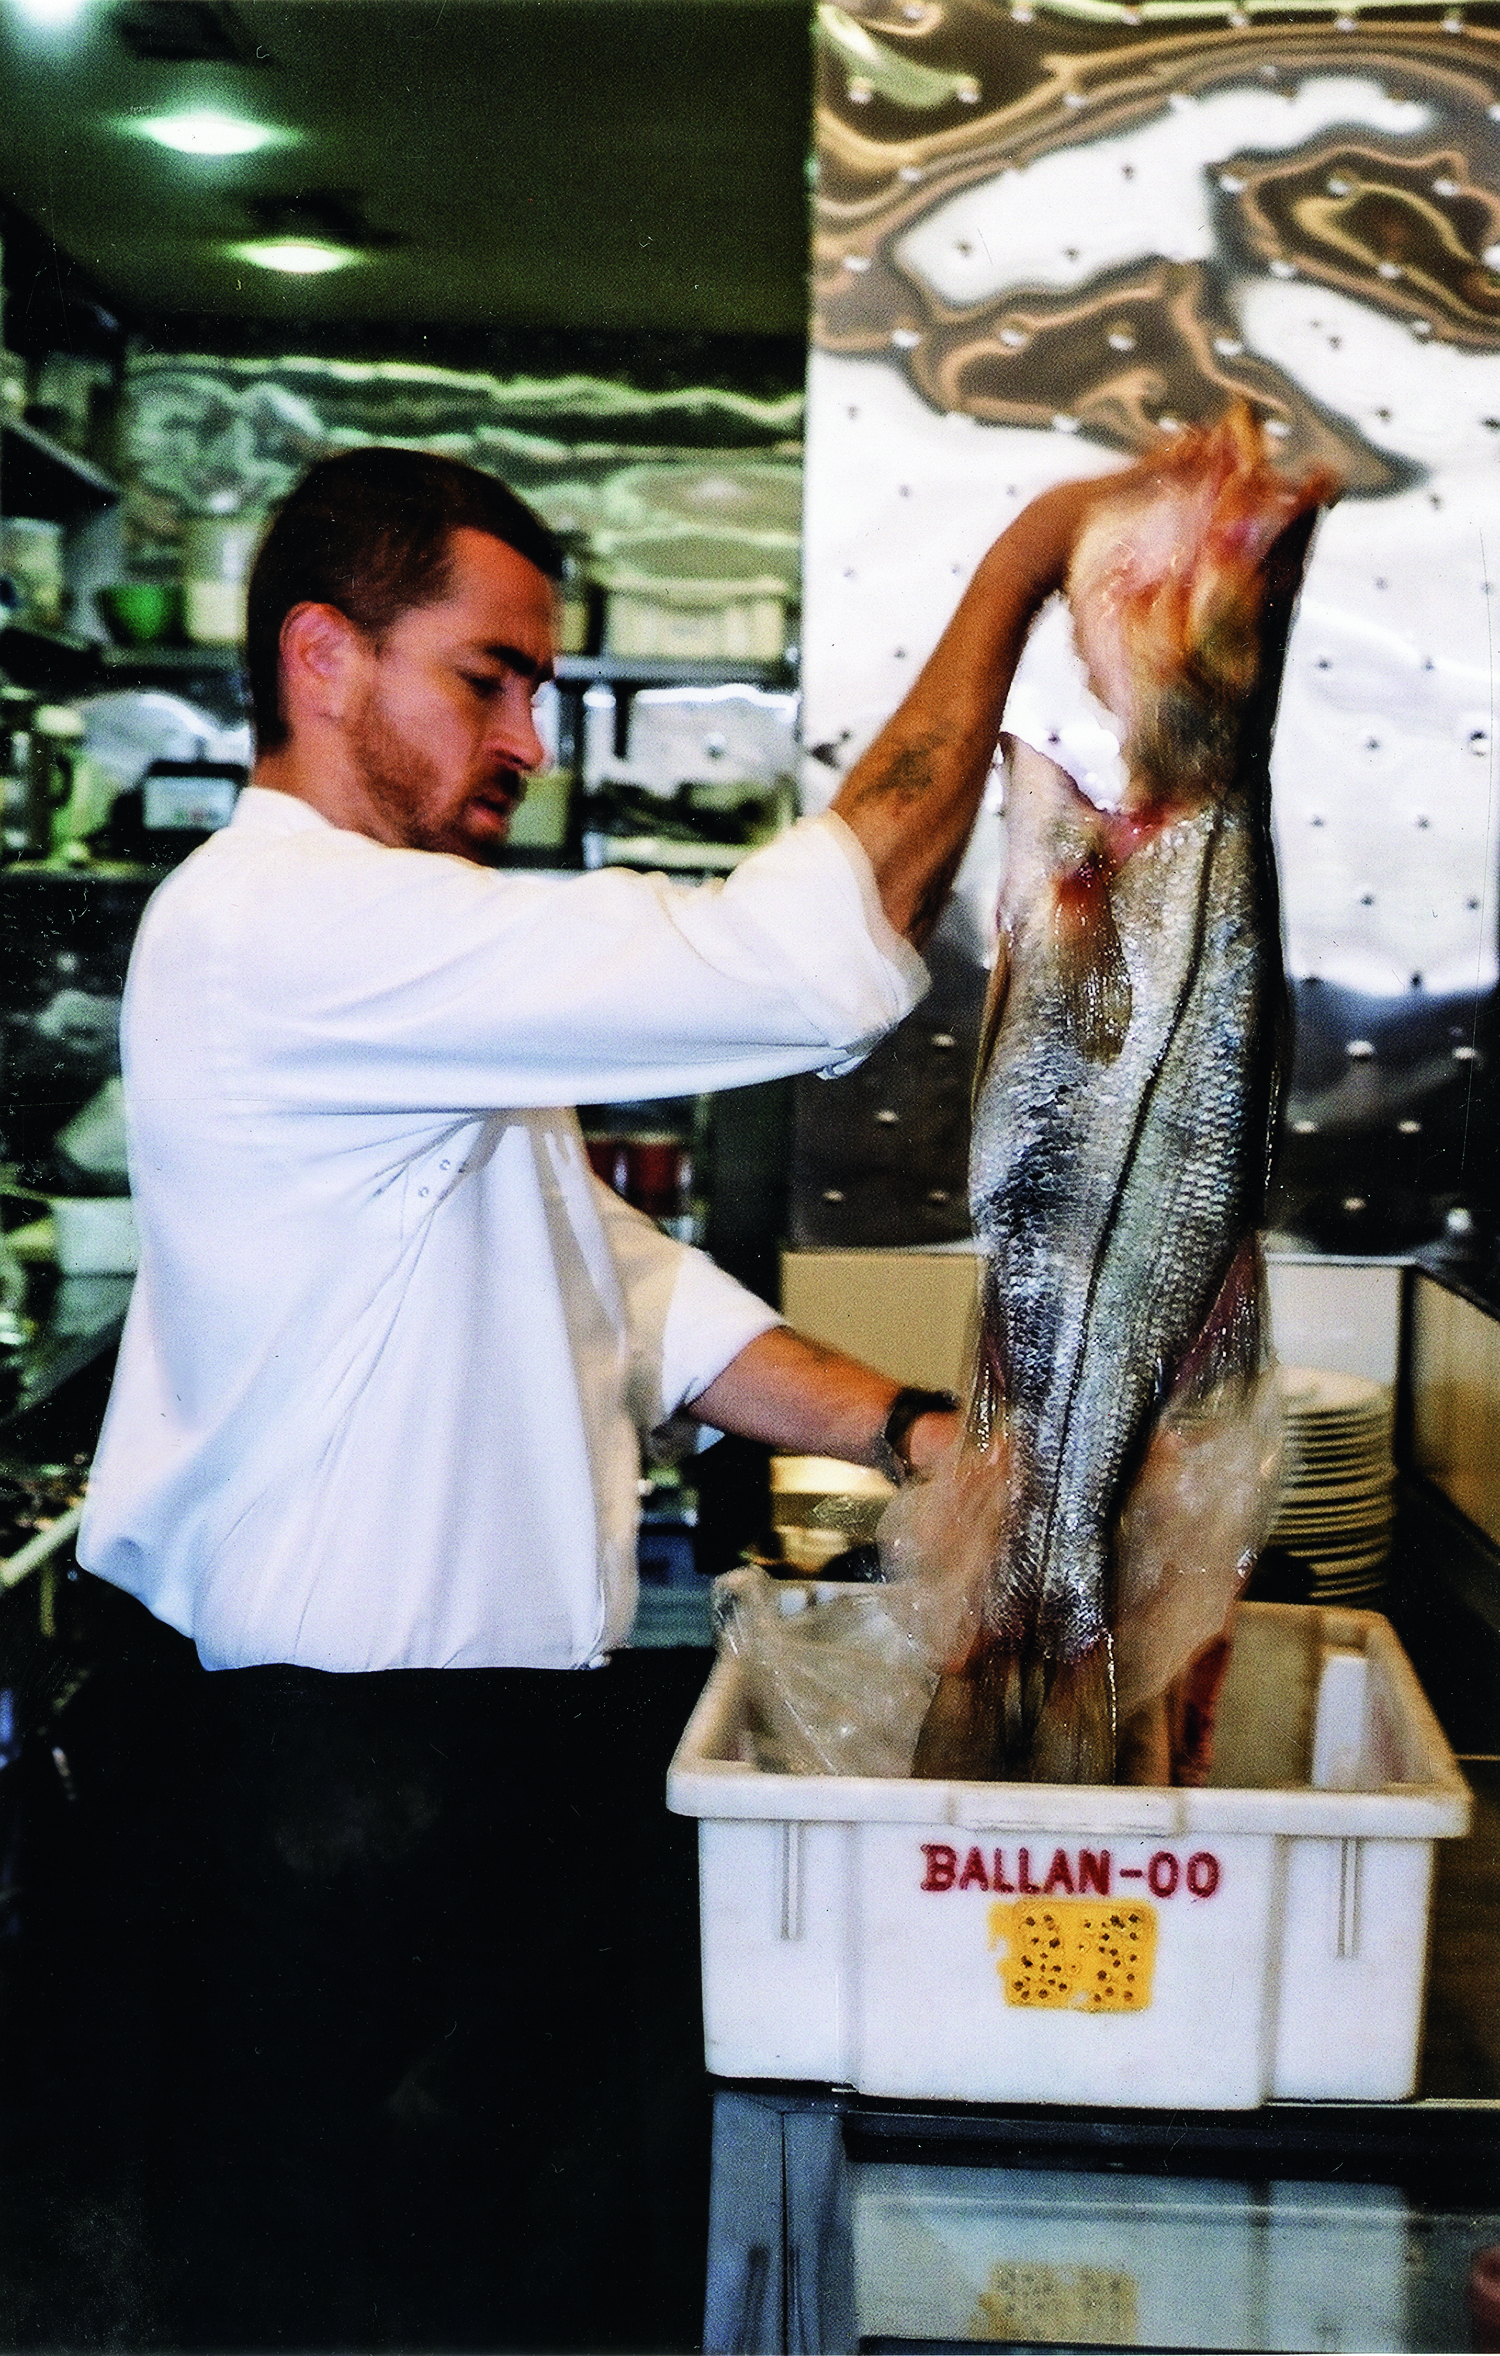 O chef Alex Atala de lado levantando peixe fresco de caixote de plástico branco.